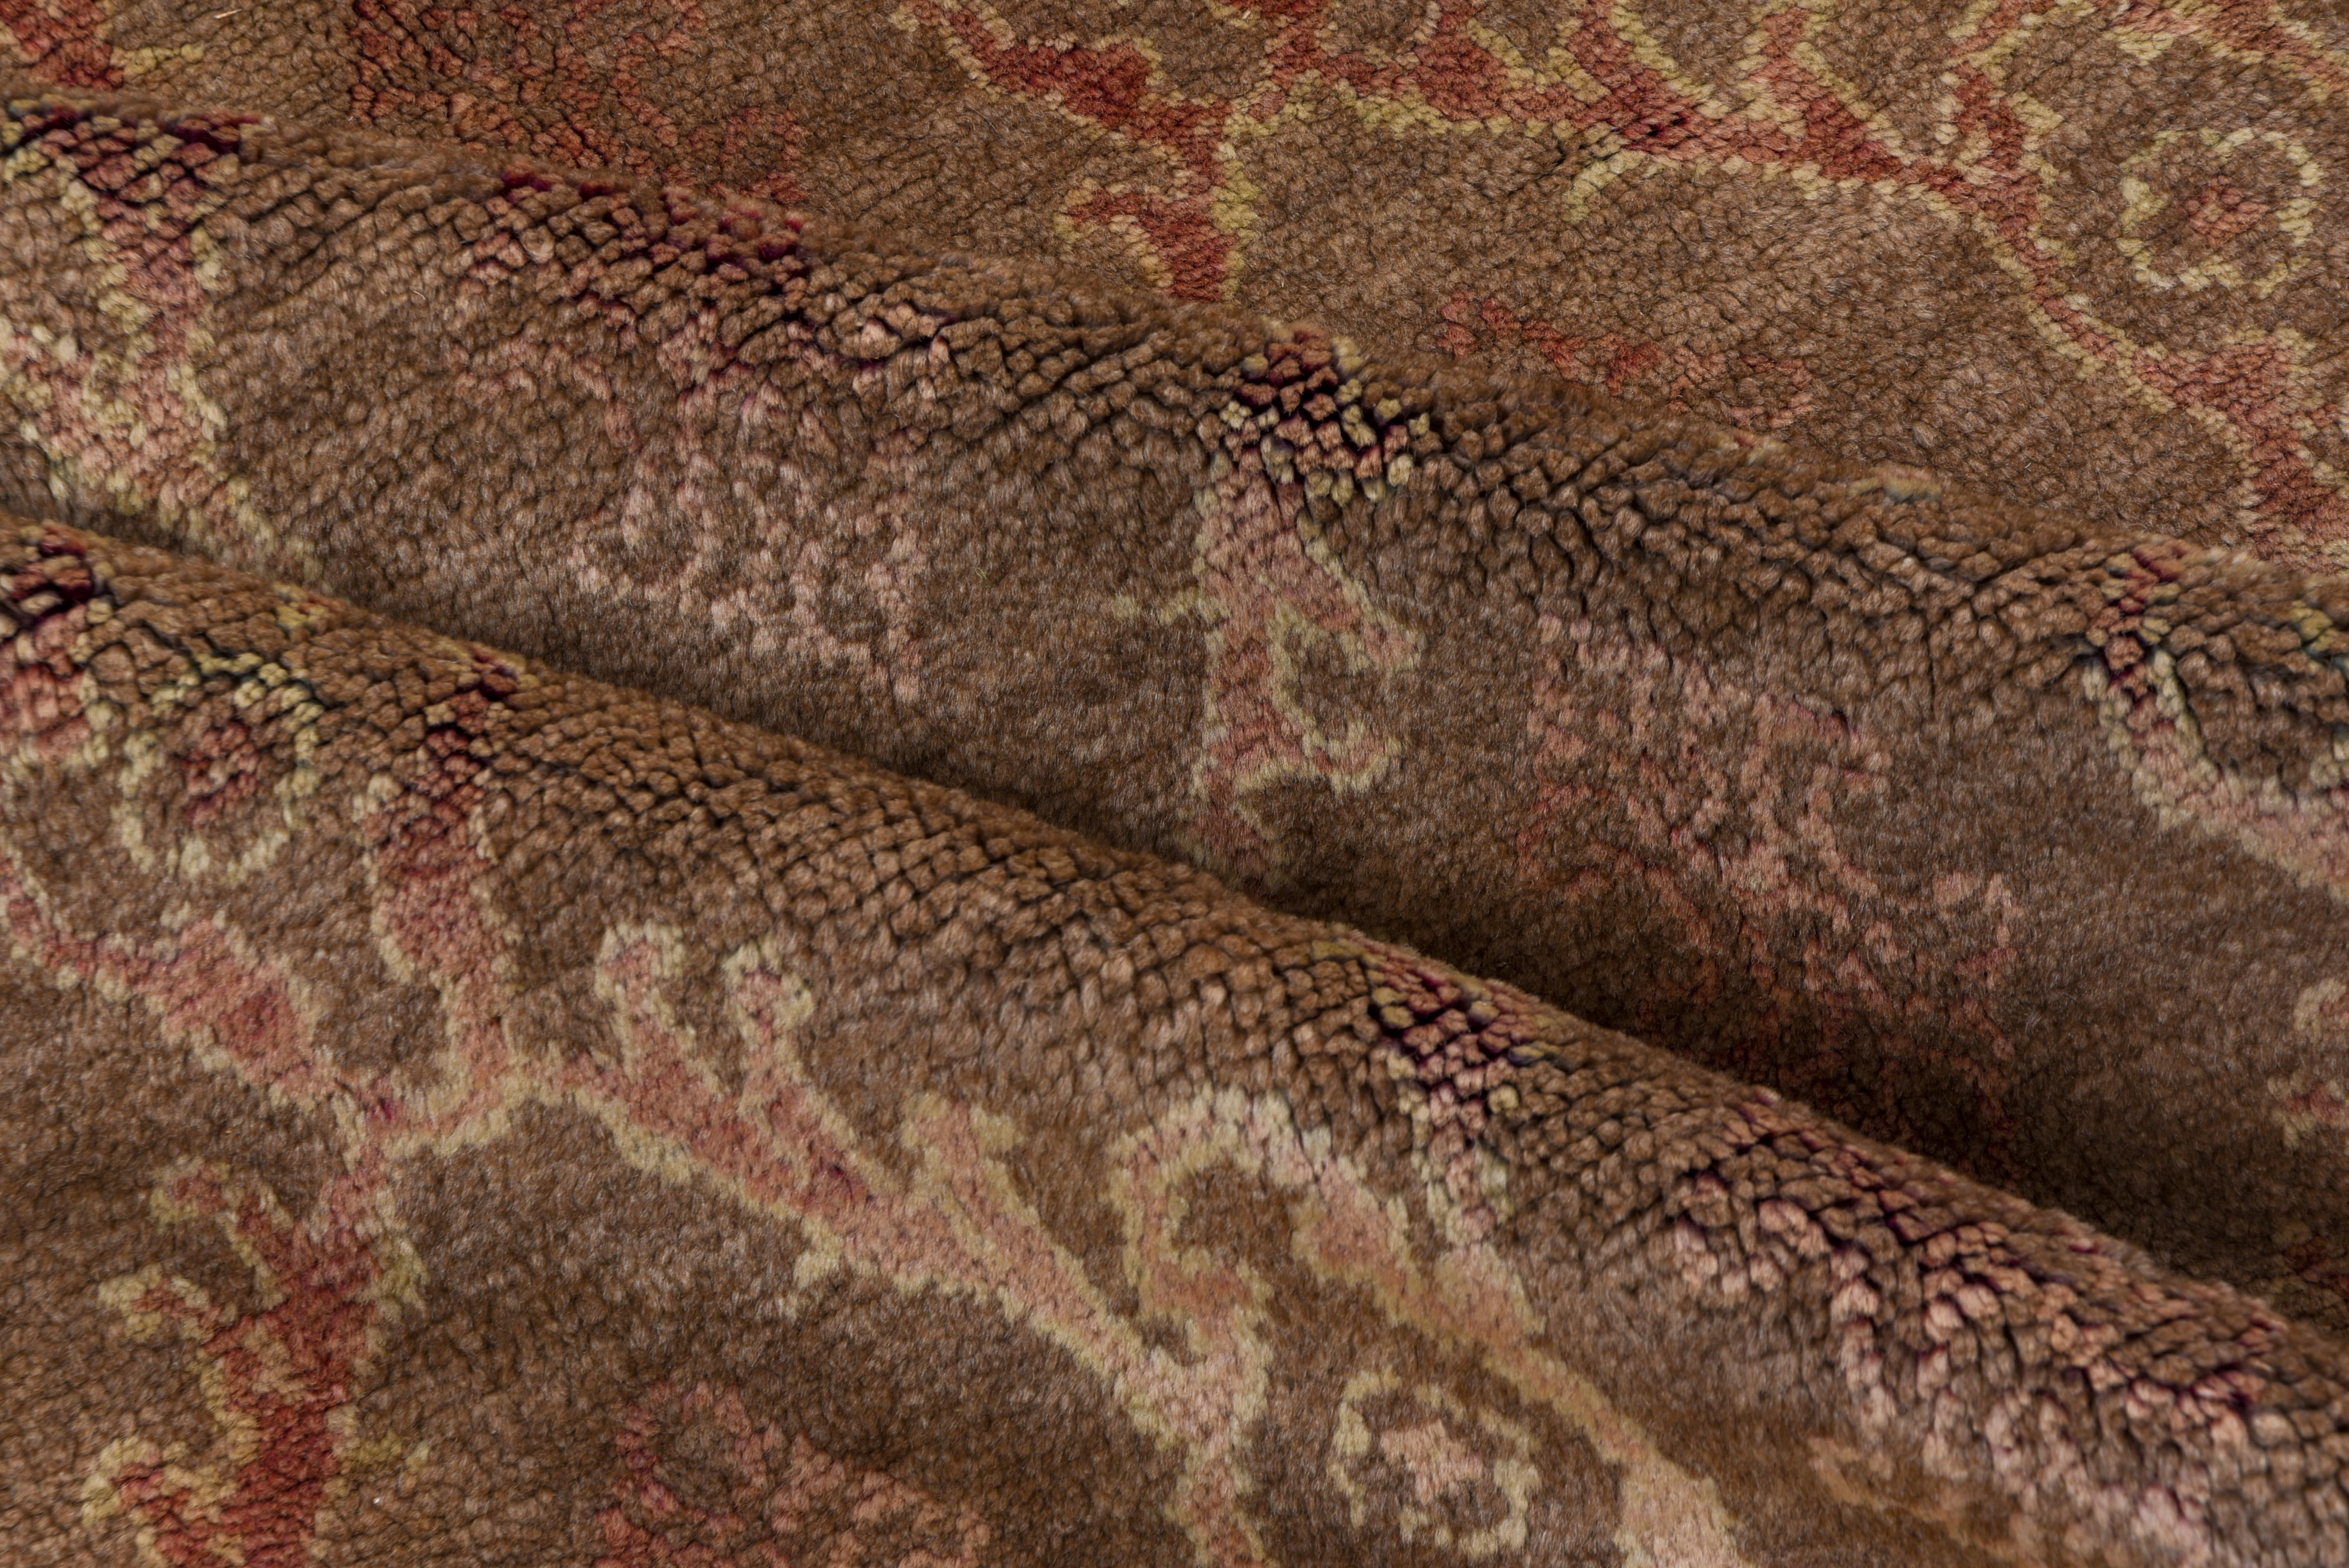 Antike Mitte des Jahrhunderts Teppich in erstaunlichen Zustand, erkundigen Sie sich mit jeder und alle Fragen.